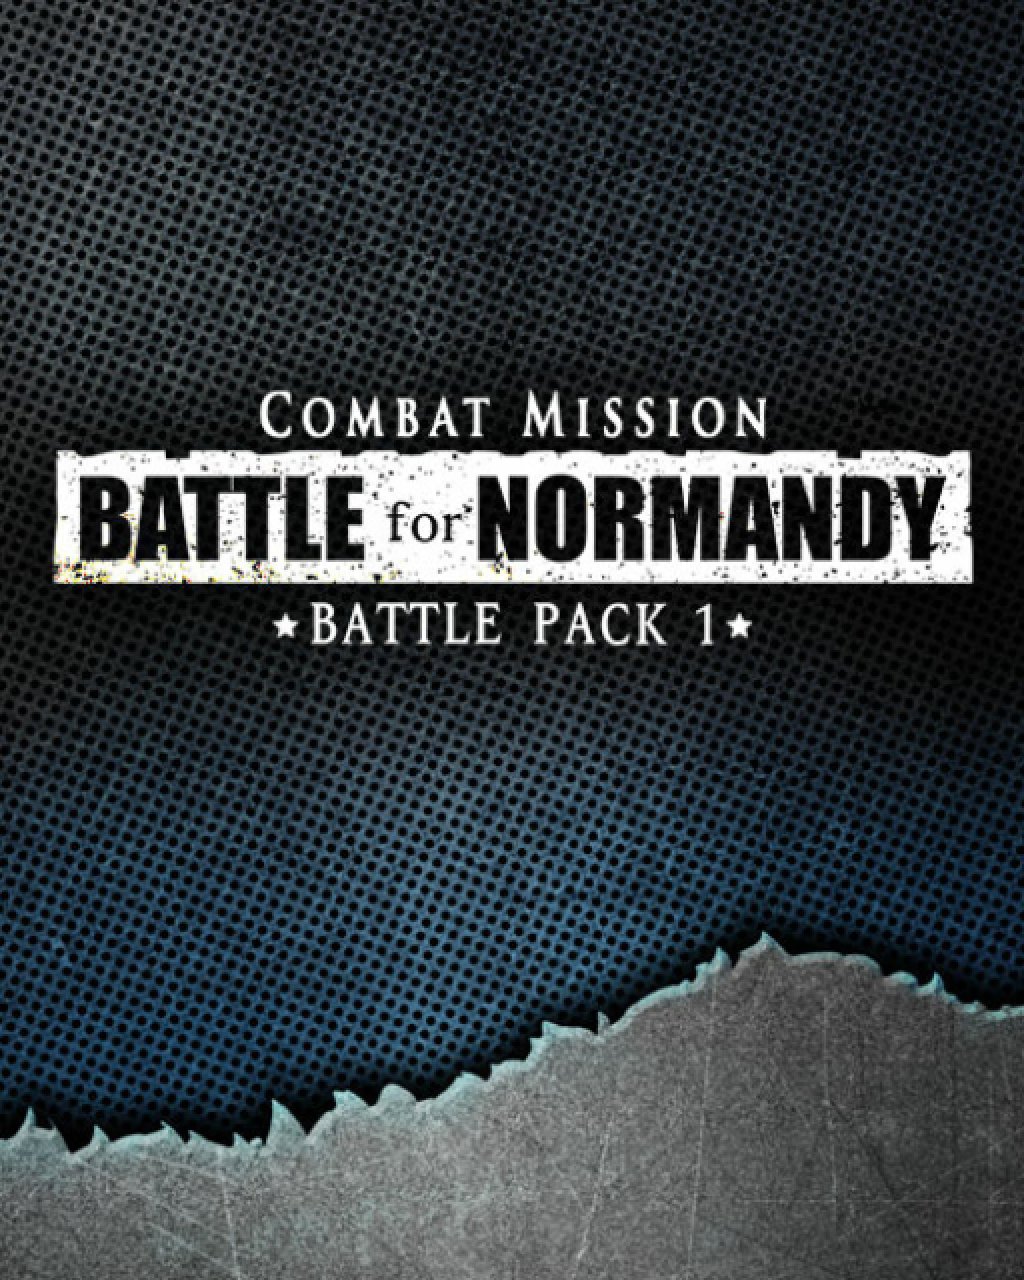 Combat Mission Battle for Normandy Battle Pack 1